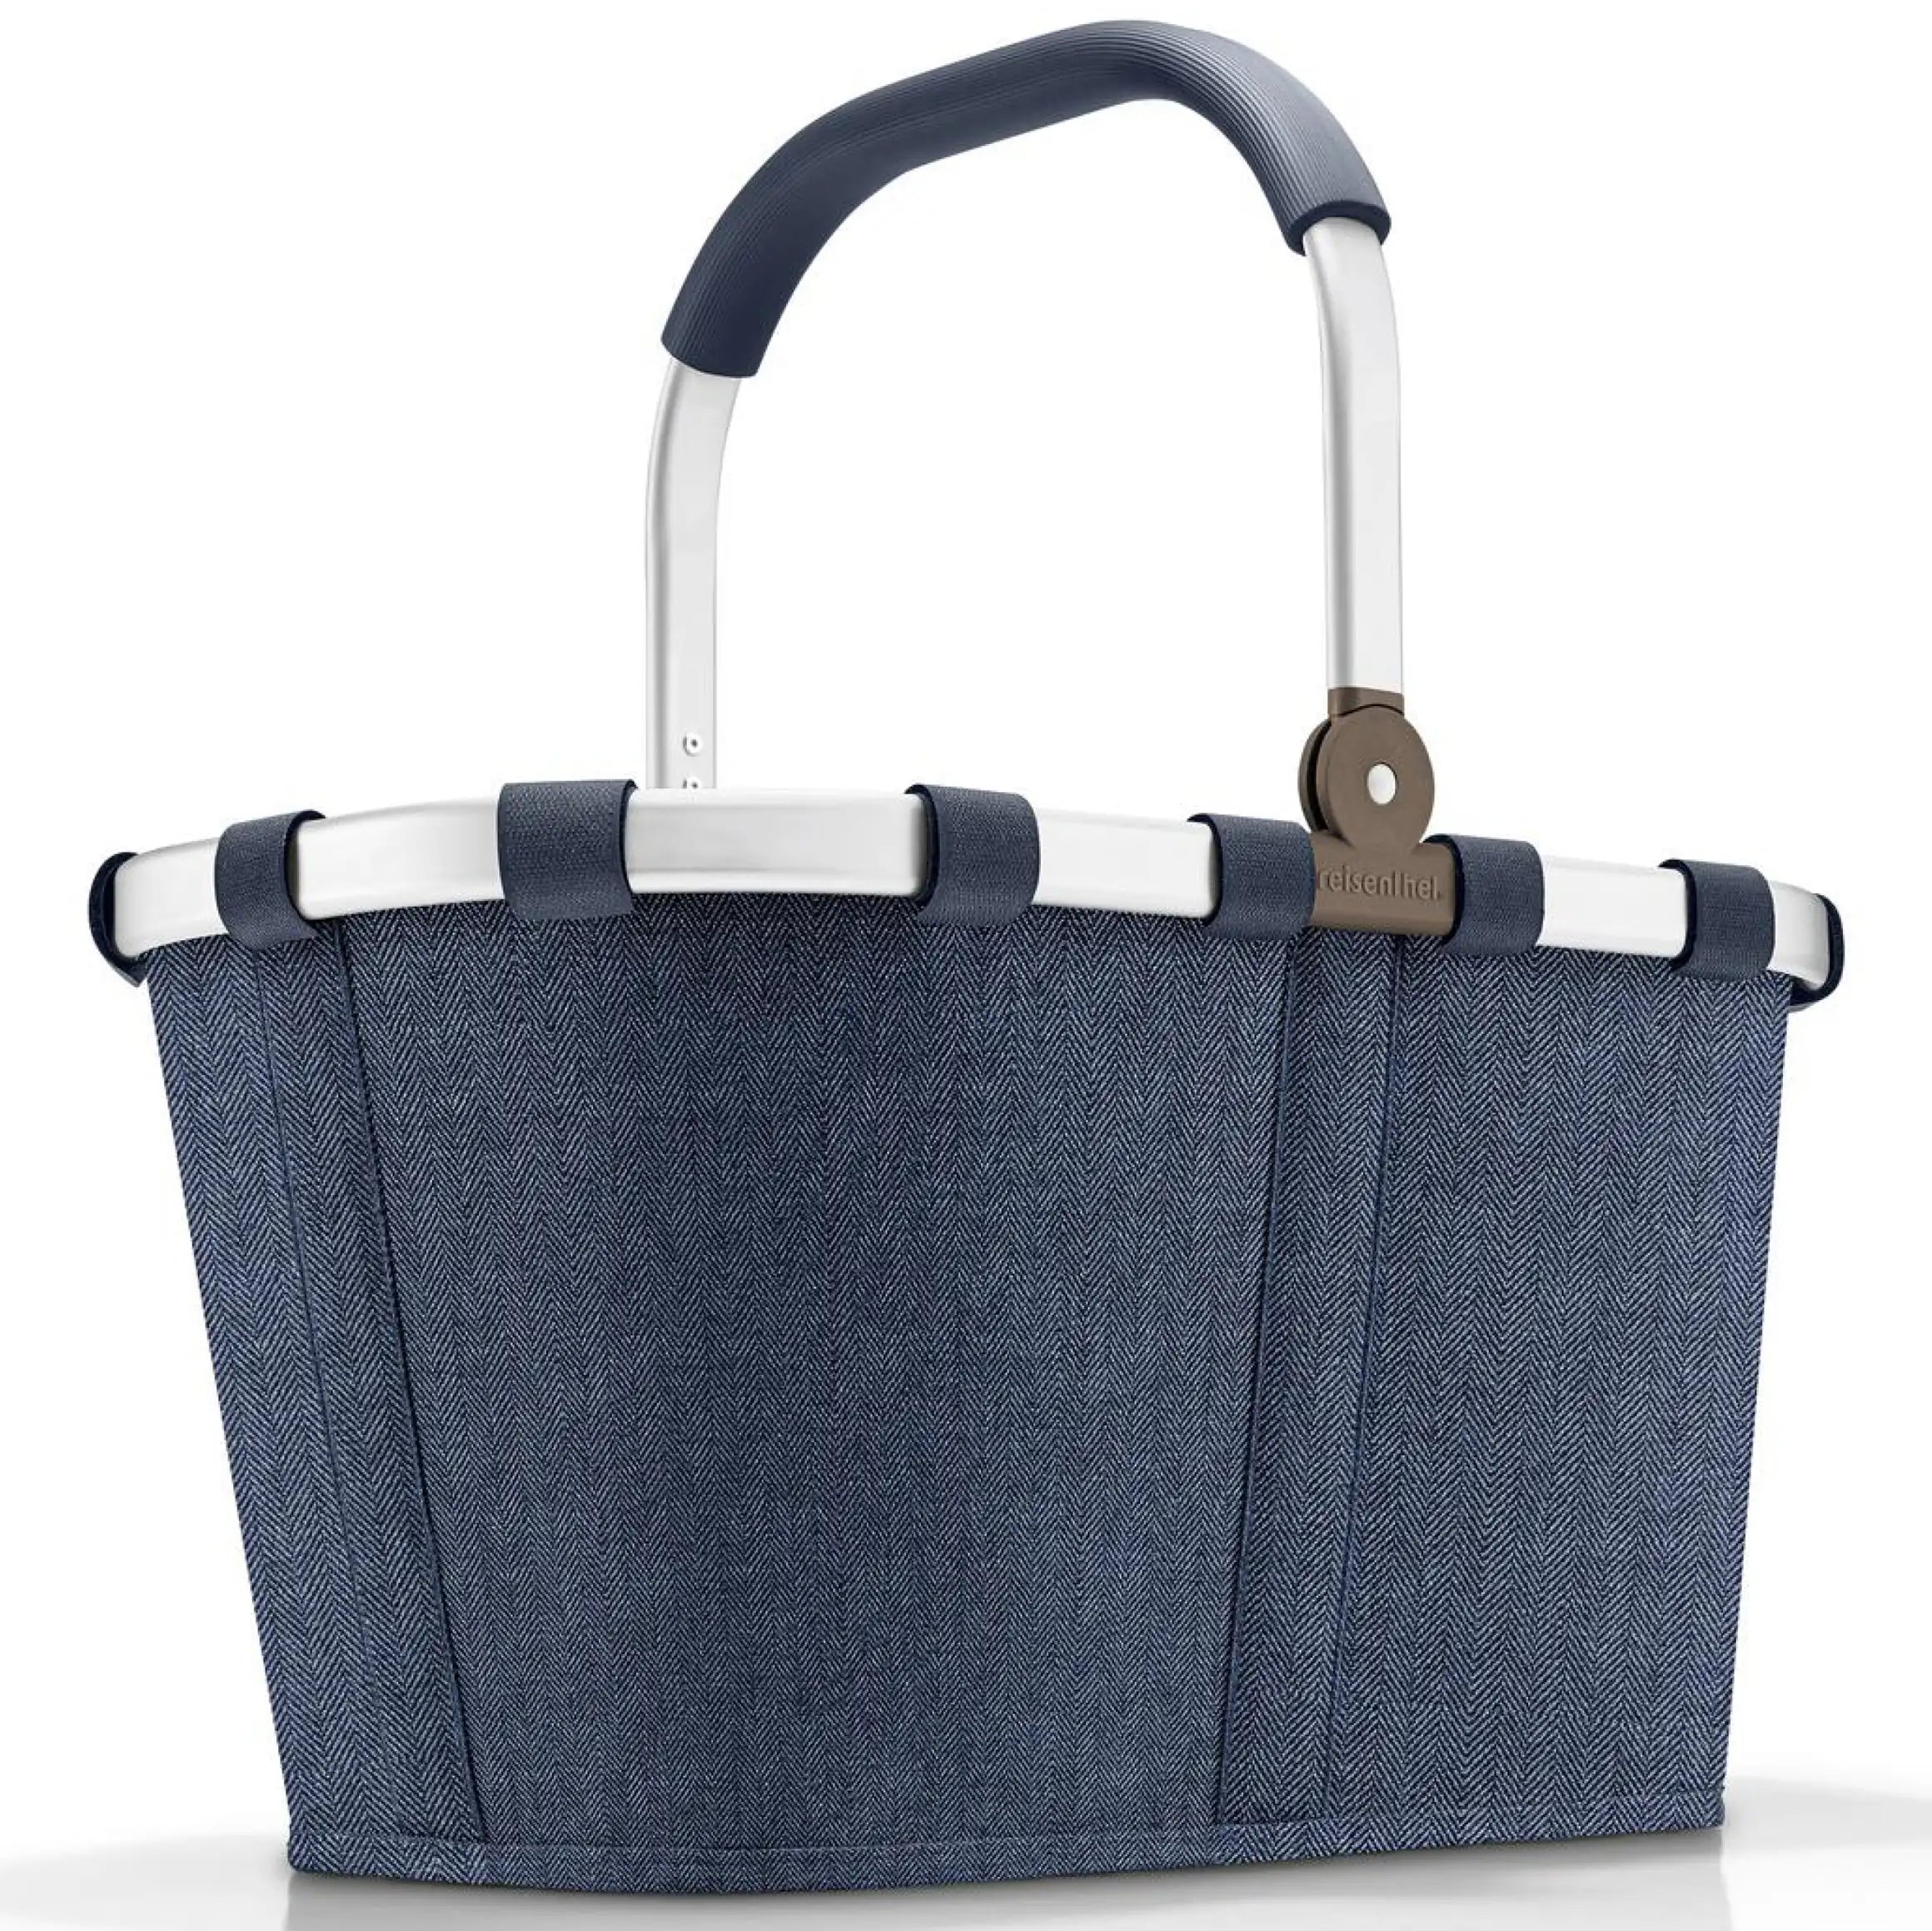 Reisenthel Shopping Carrybag Einkaufskorb 48 cm - Herringbone Dark Blue